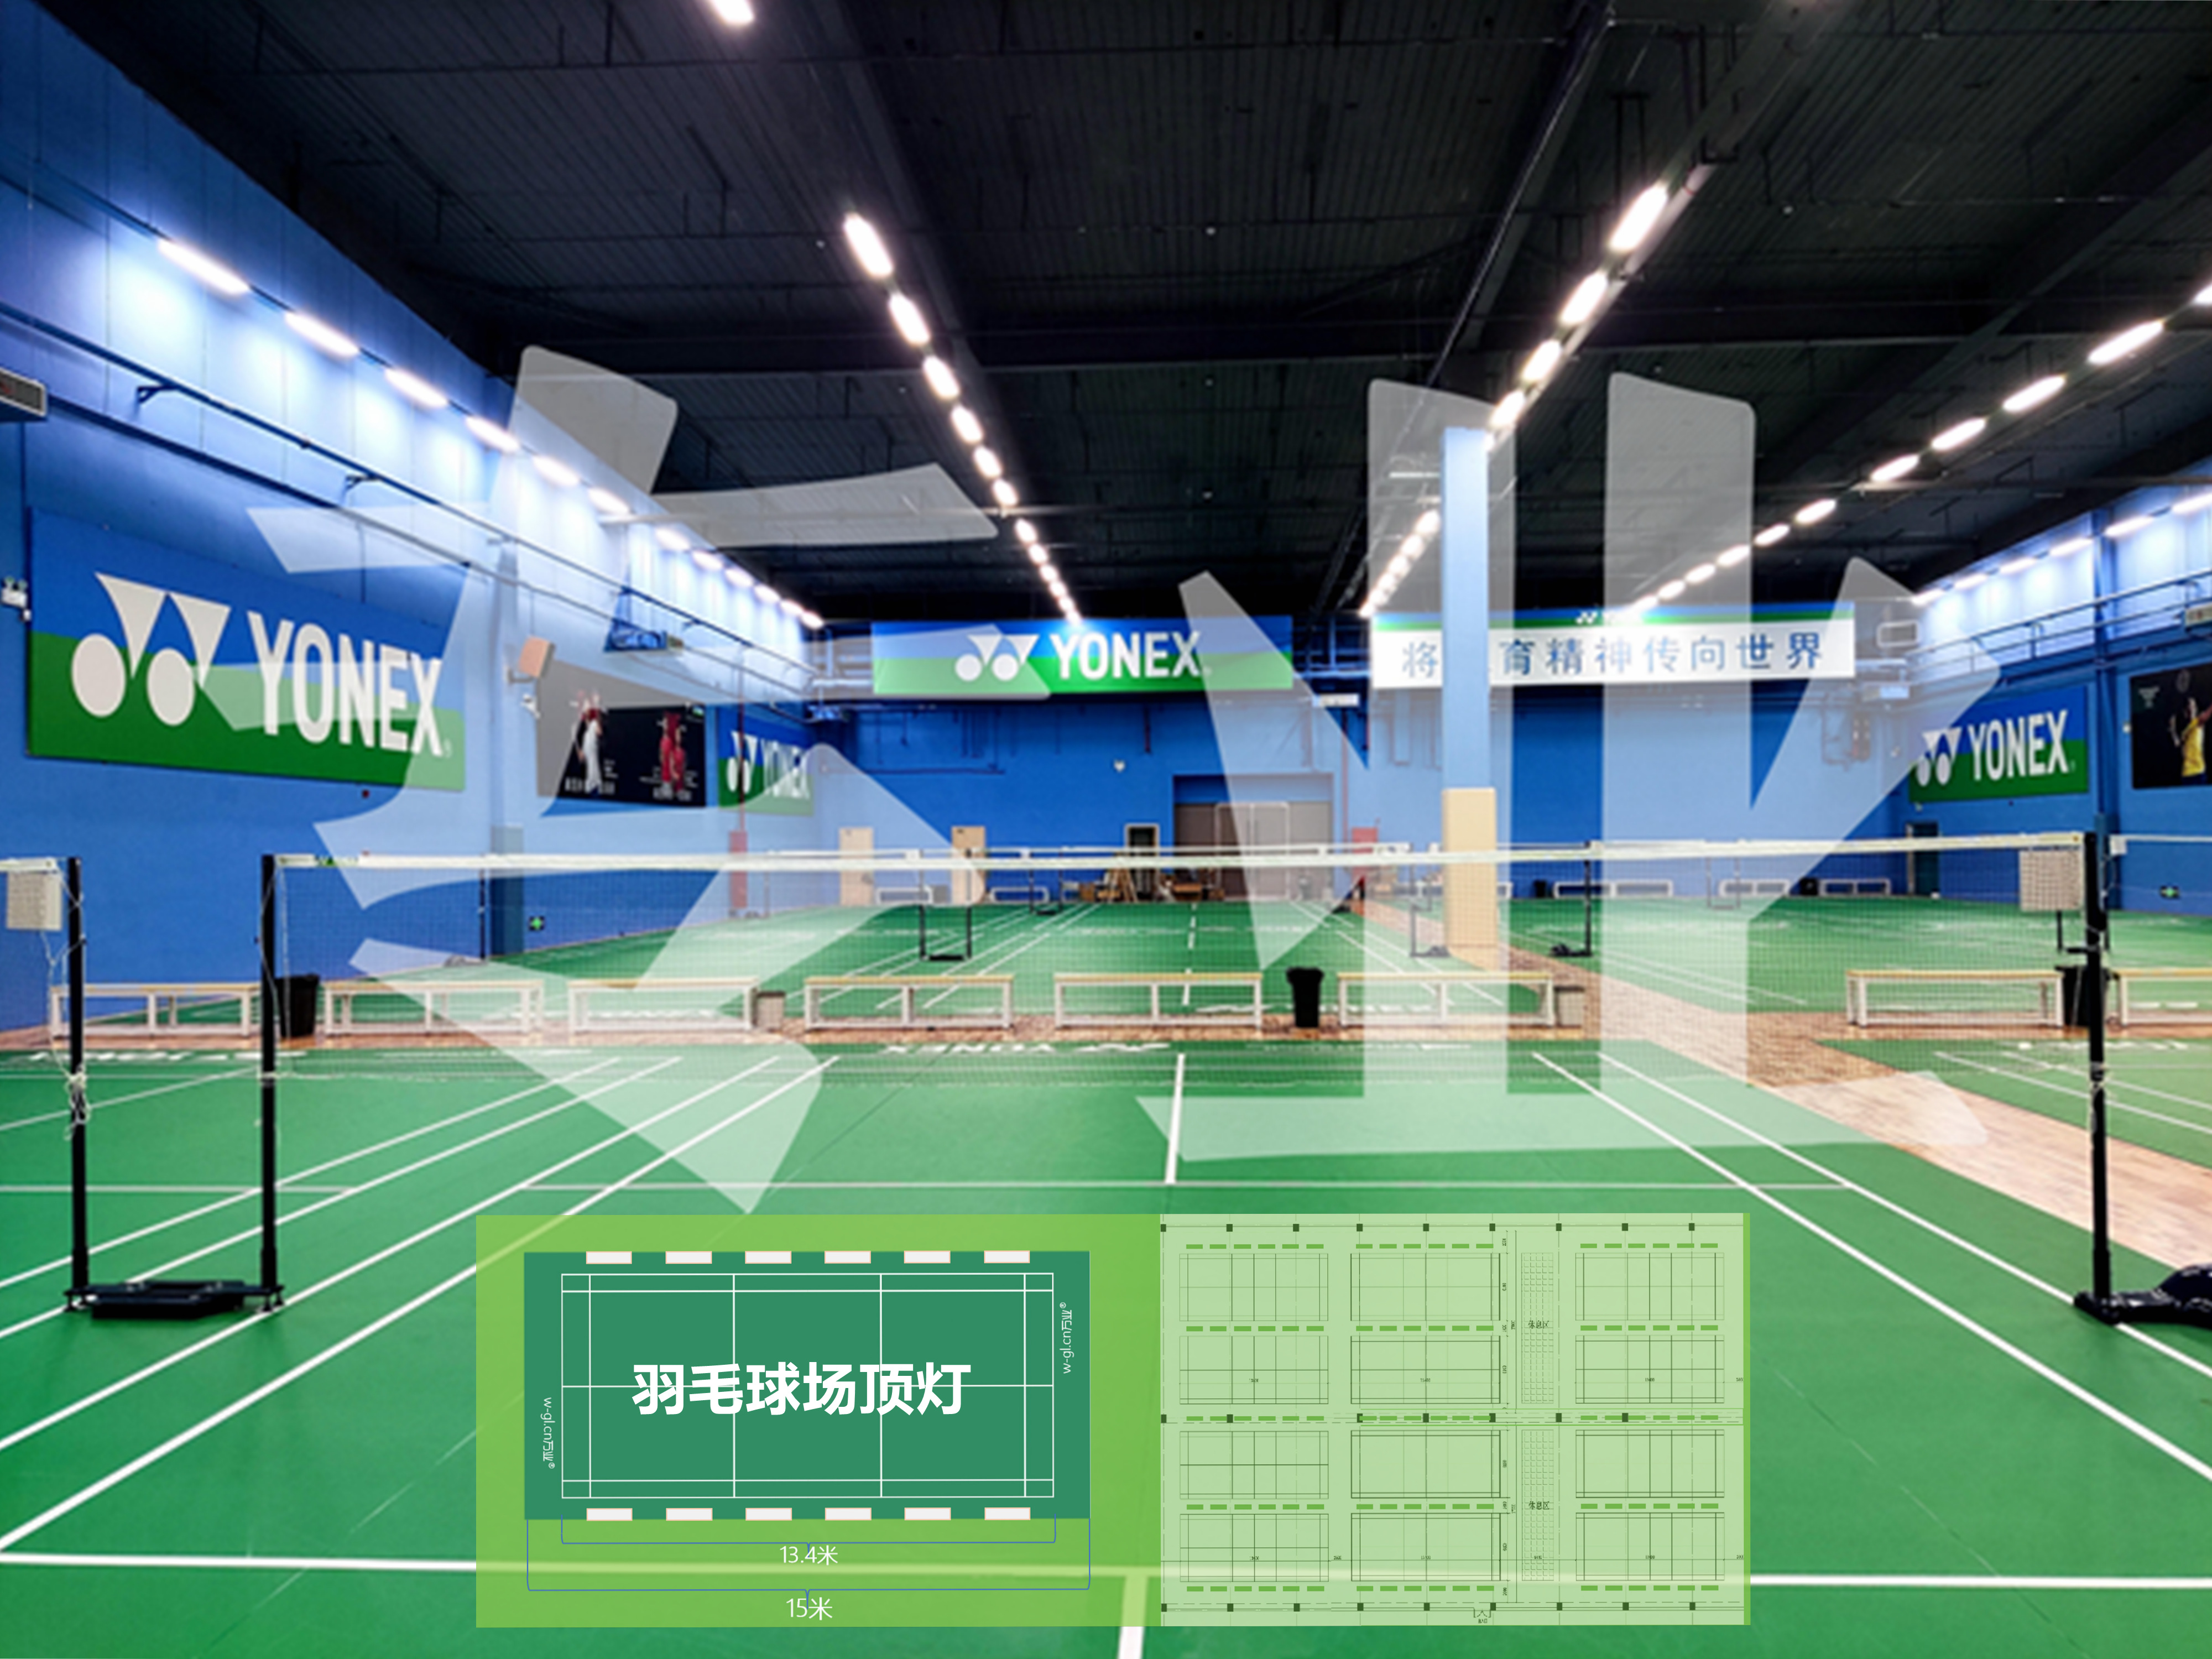 上海羽毛球馆灯光项目羽毛球馆是体育场馆的重要组成部分,群众参与度